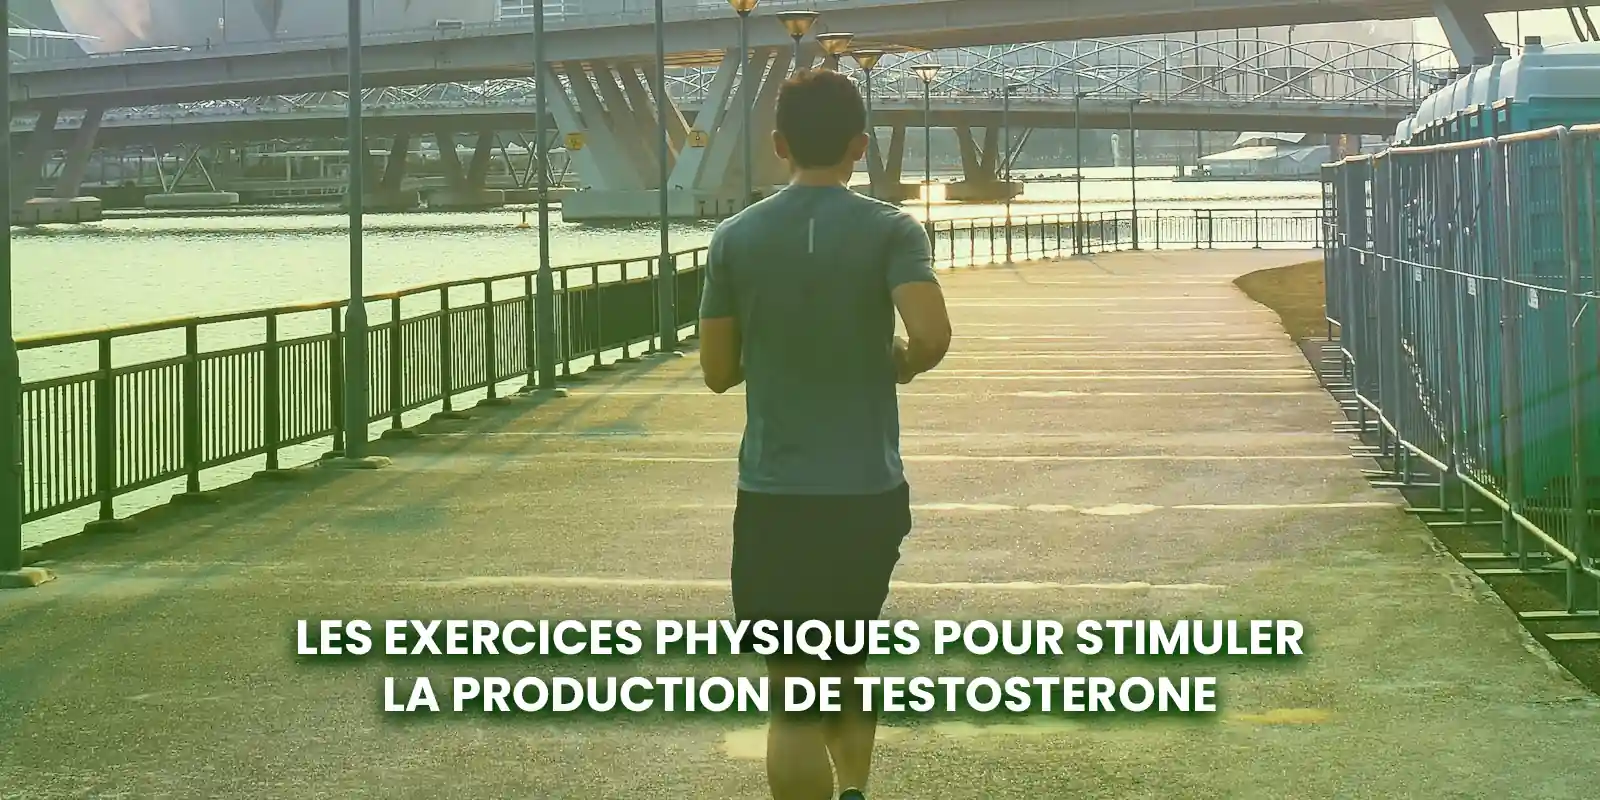 Les exercices physiques pour stimuler la production de testosterone